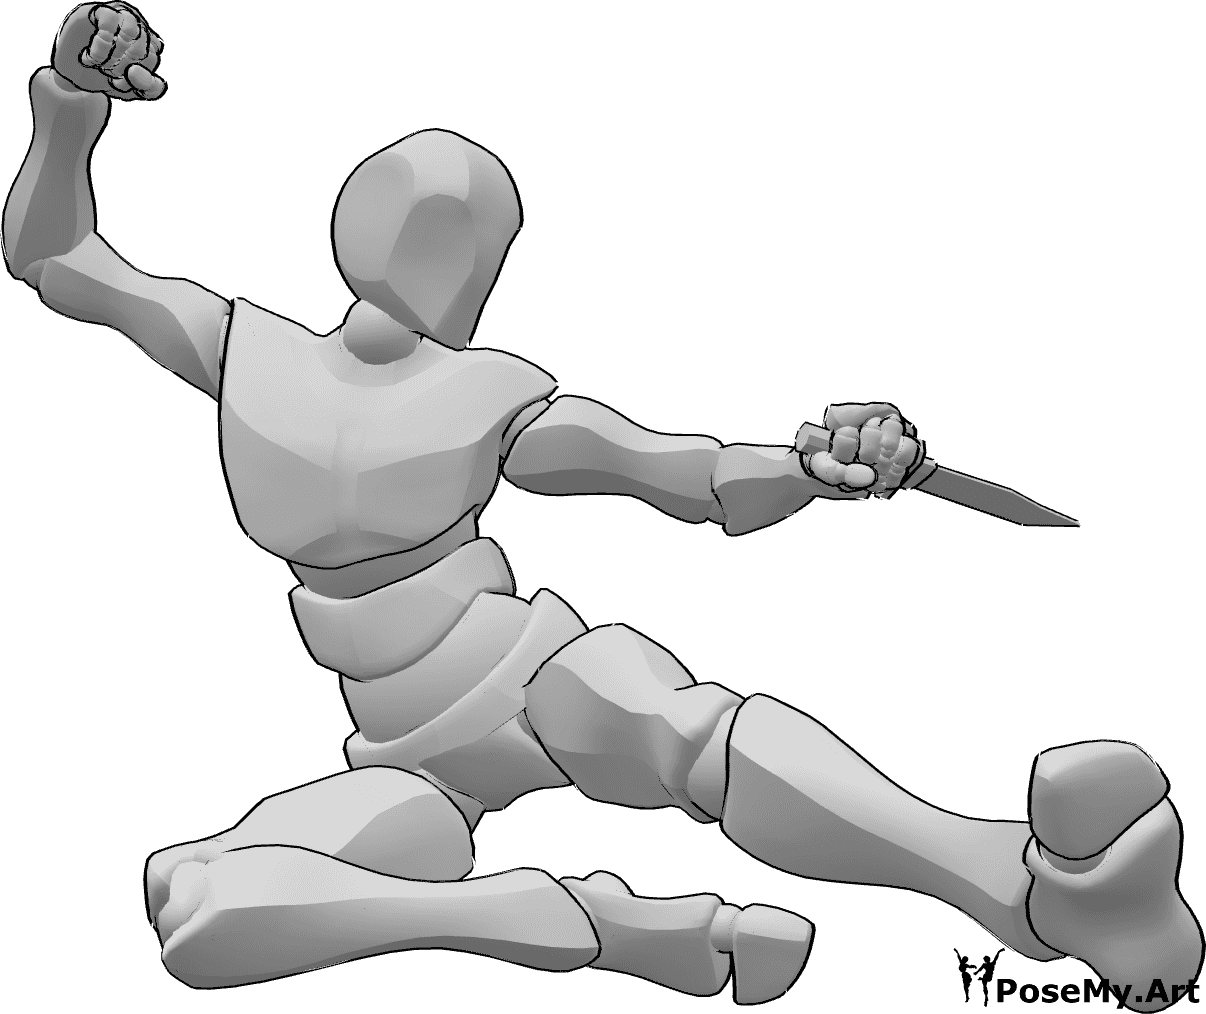 Référence des poses- Pose d'attaque avec coup de pied latéral - L'homme attaque, saute haut et donne des coups de pied latéraux, il tient un poignard.